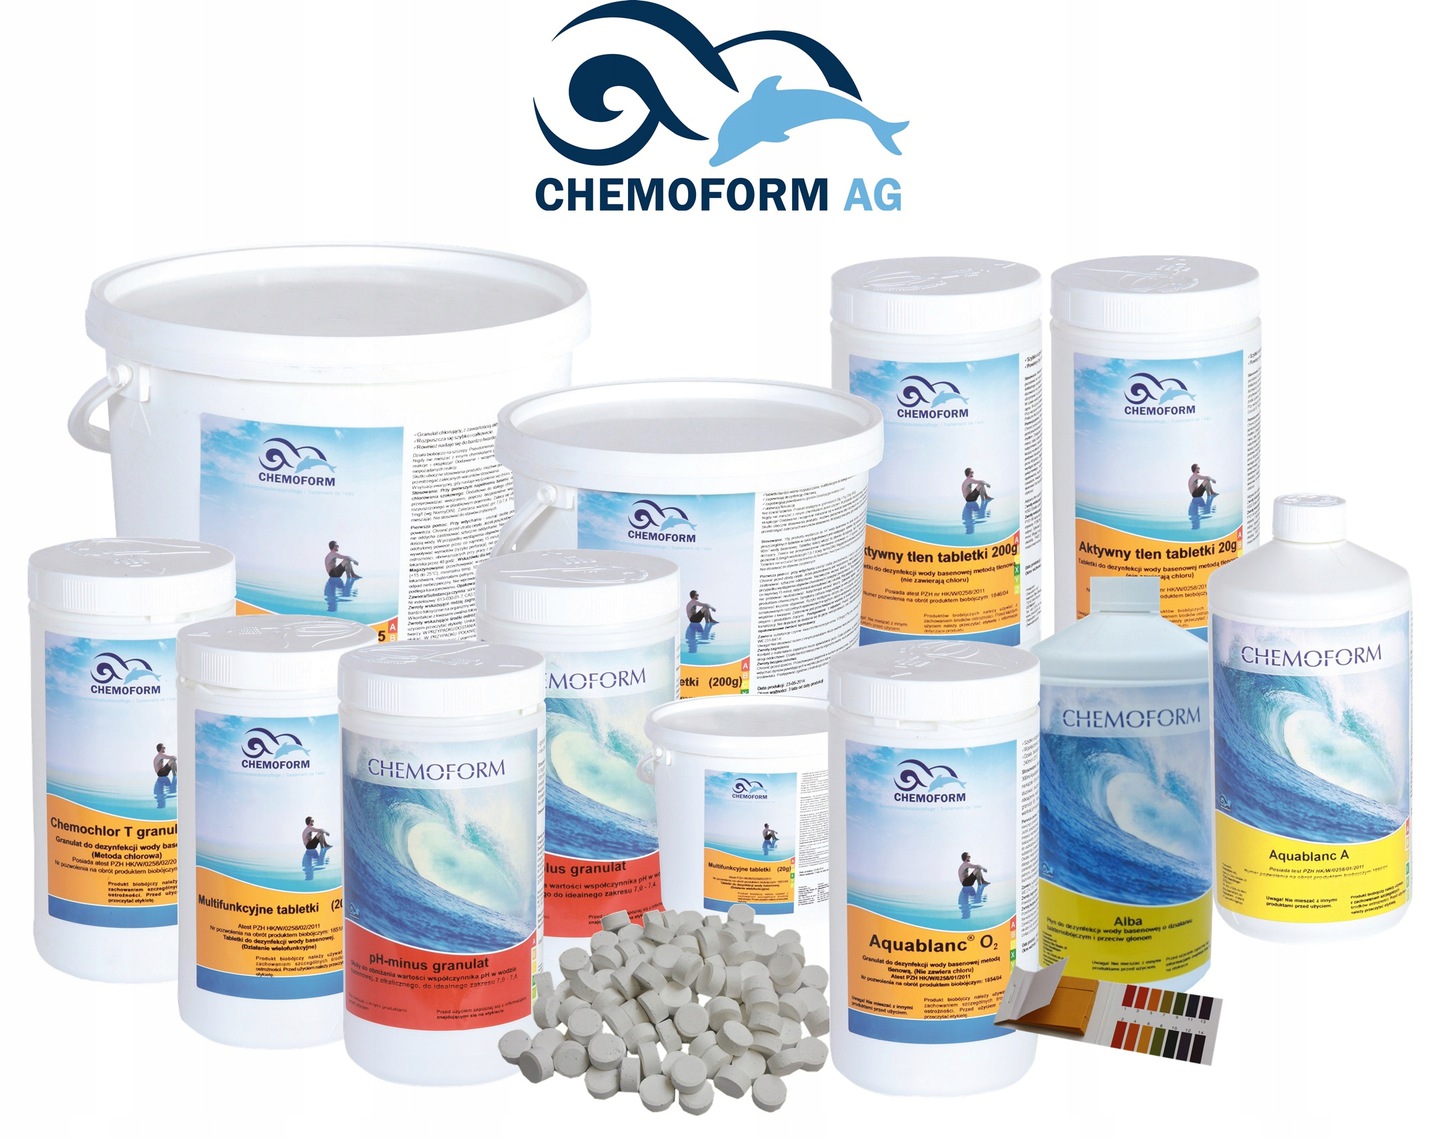 Обзор химии для бассейна Chemoform: описание препаратов, стоимость, мнения потребителей